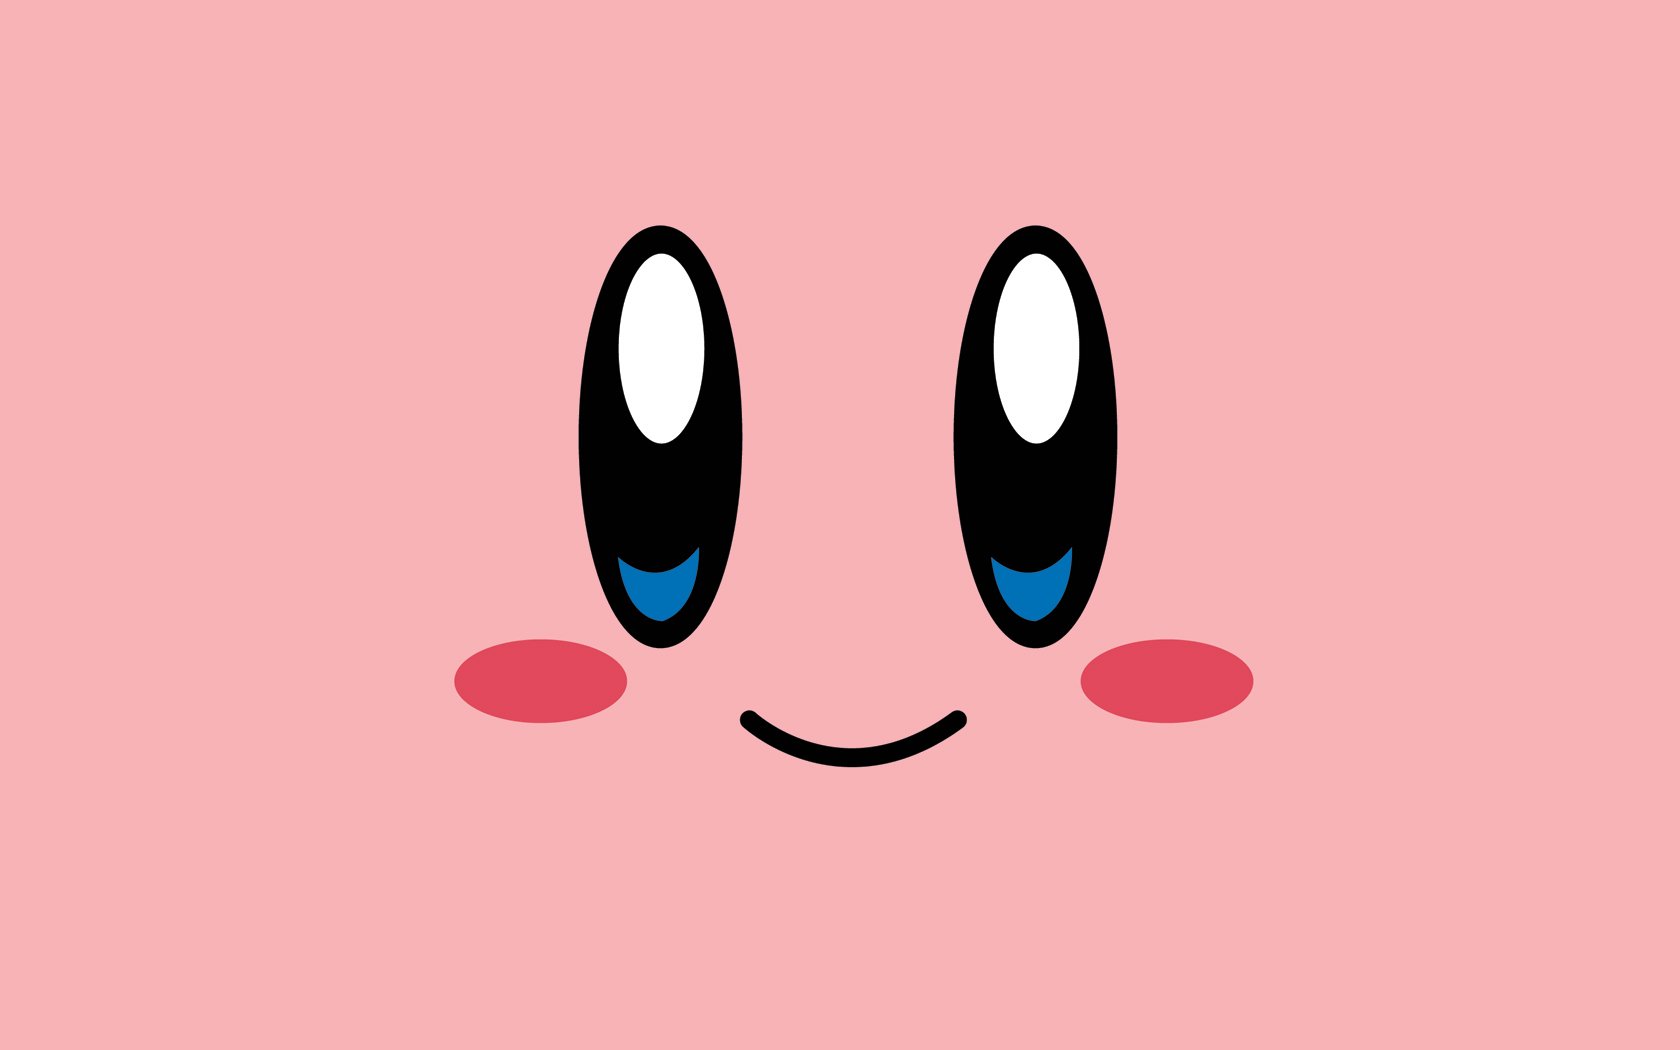 Tận hưởng vẻ đẹp tuyệt vời của Kirby với hình nền và nền tảng HD đẹp. Với độ phân giải cao, các chi tiết của Kirby sẽ bắt mắt và sống động hơn nhiều. Đi kèm với đó là nền tảng tuyệt vời để giúp bạn đưa Kirby đến các cuộc phiêu lưu thú vị.